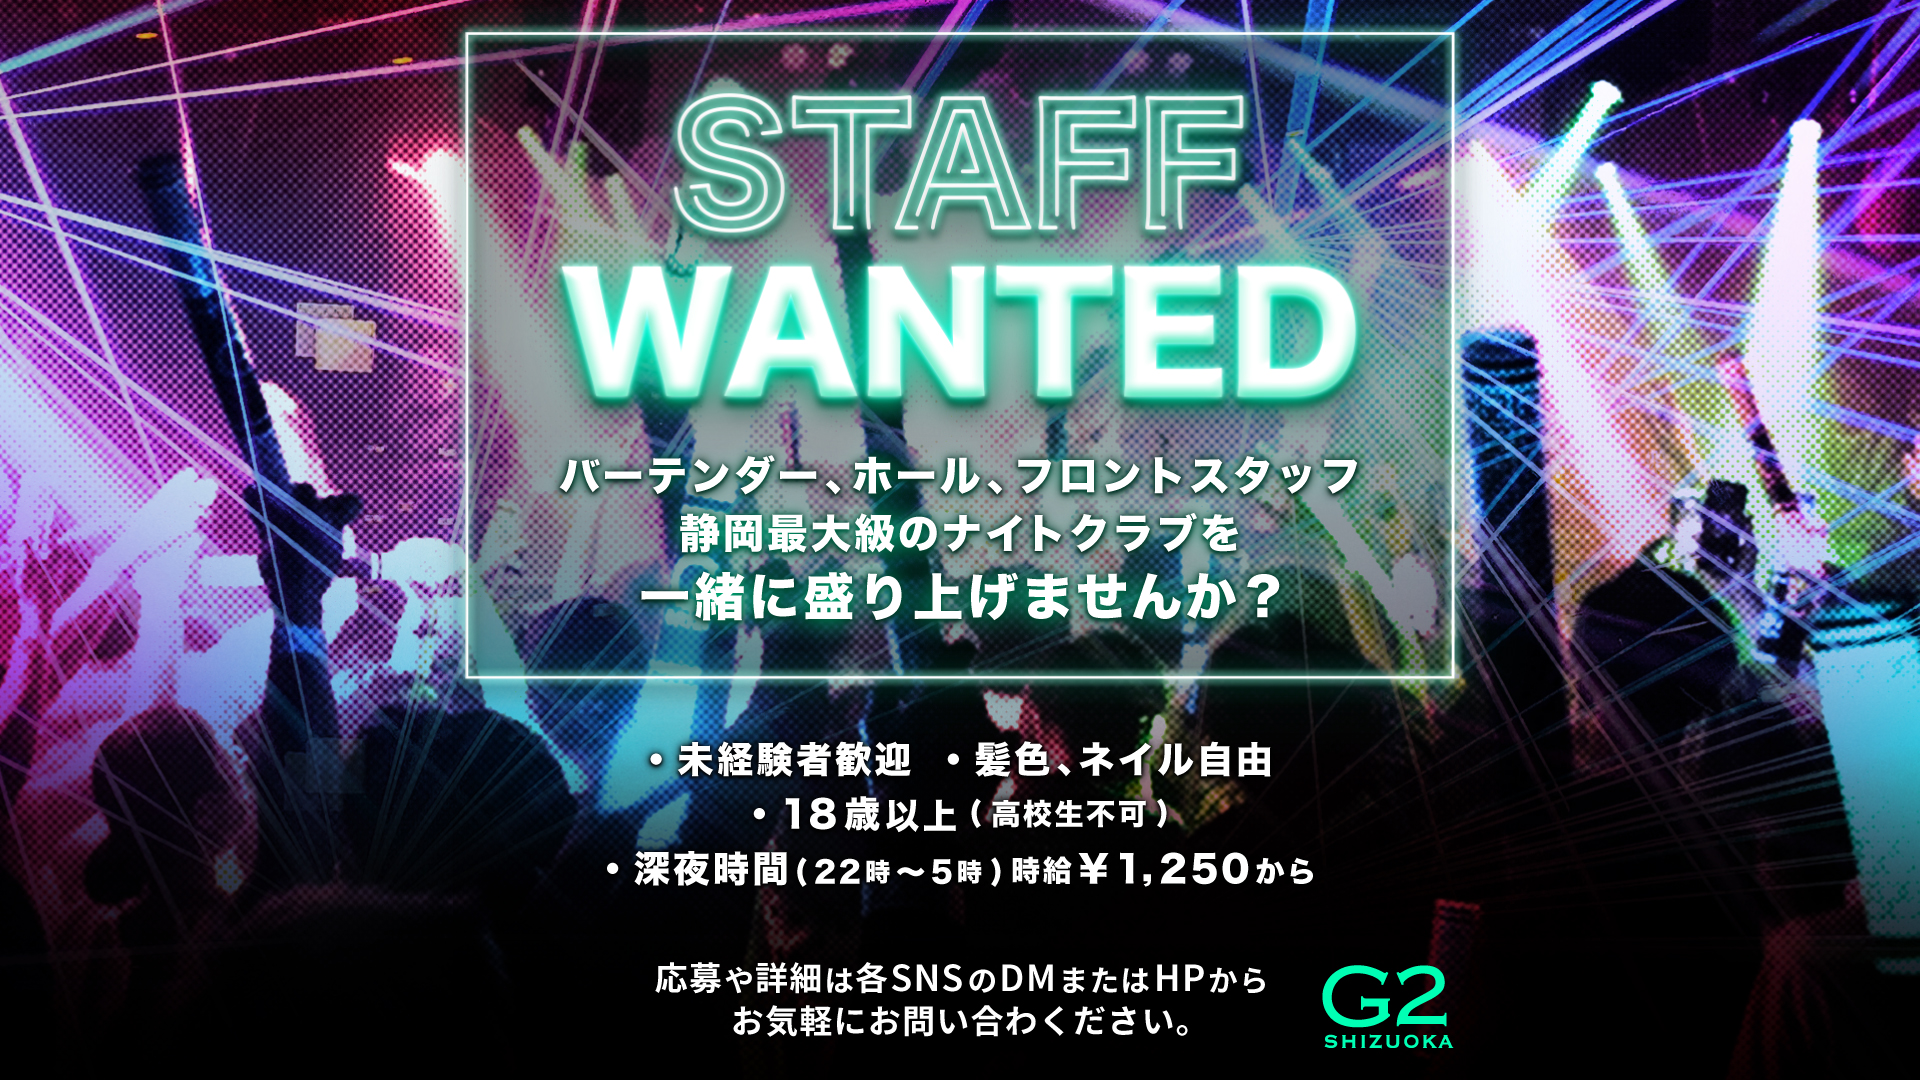 G2 Shizuoka G2 Shizuoka Staff募集中